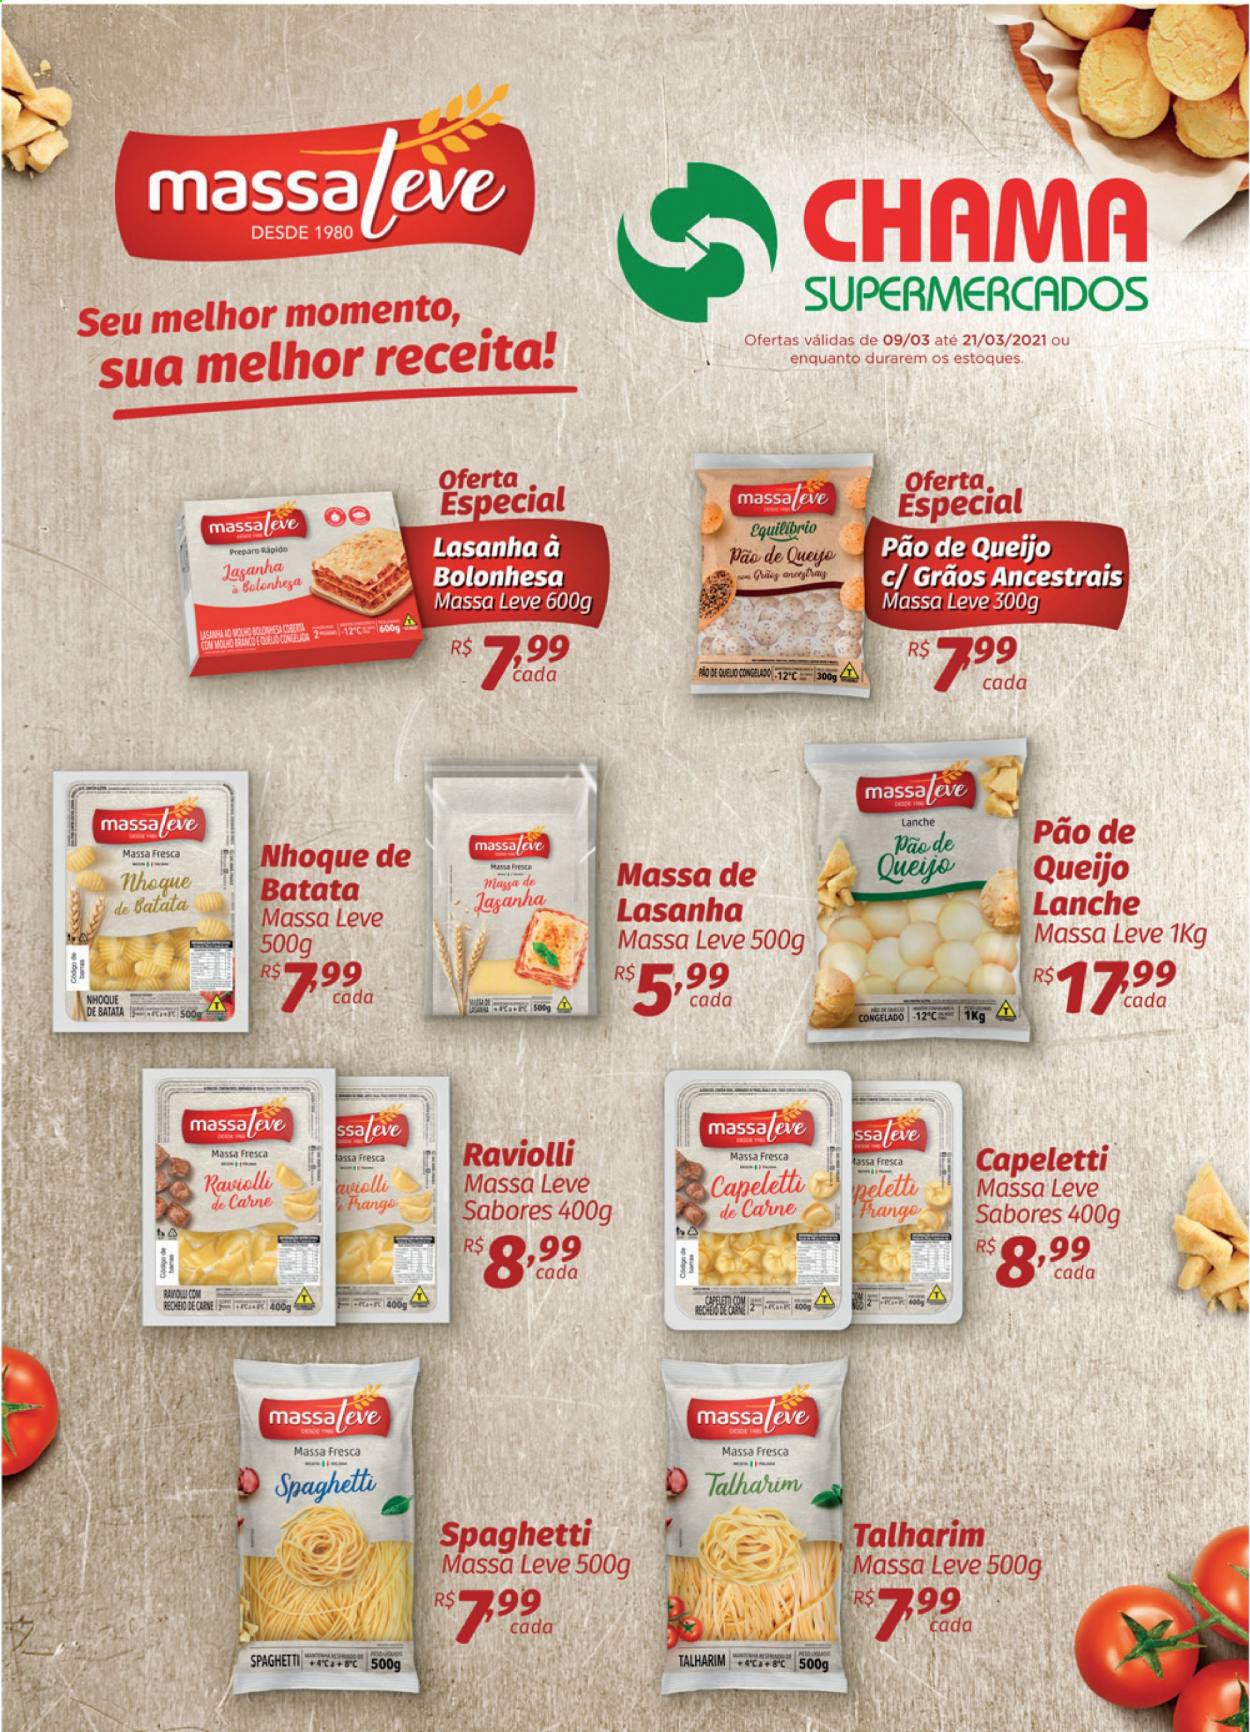 thumbnail - Folheto Chama Supermercados - 09/03/2021 - 21/03/2021 - Produtos em promoção - pão de queijo, pão, frango, lasanha, nhoque, ravioli, capeletti, spaghetti. Página 1.